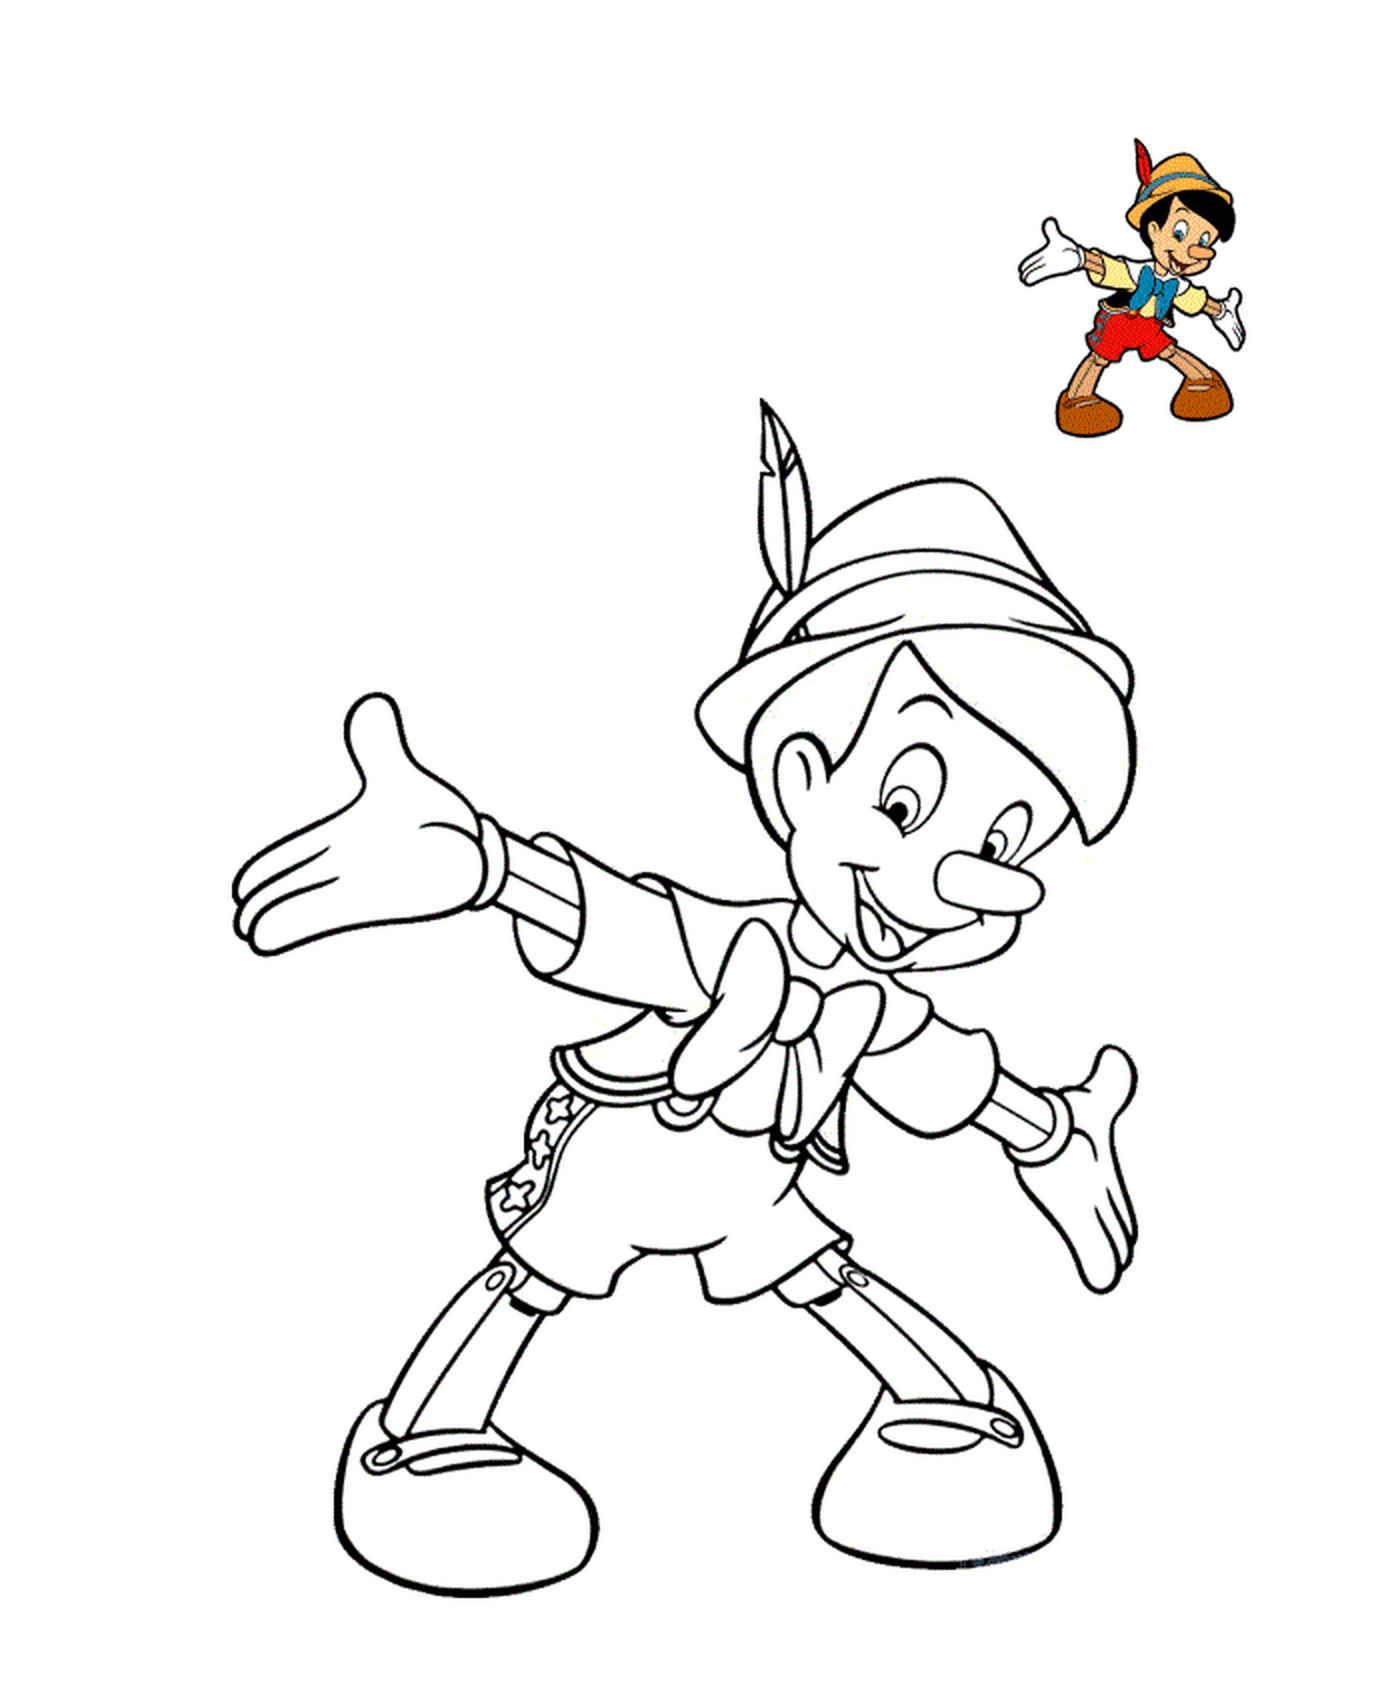  Pinocchio sorridente con cappello 